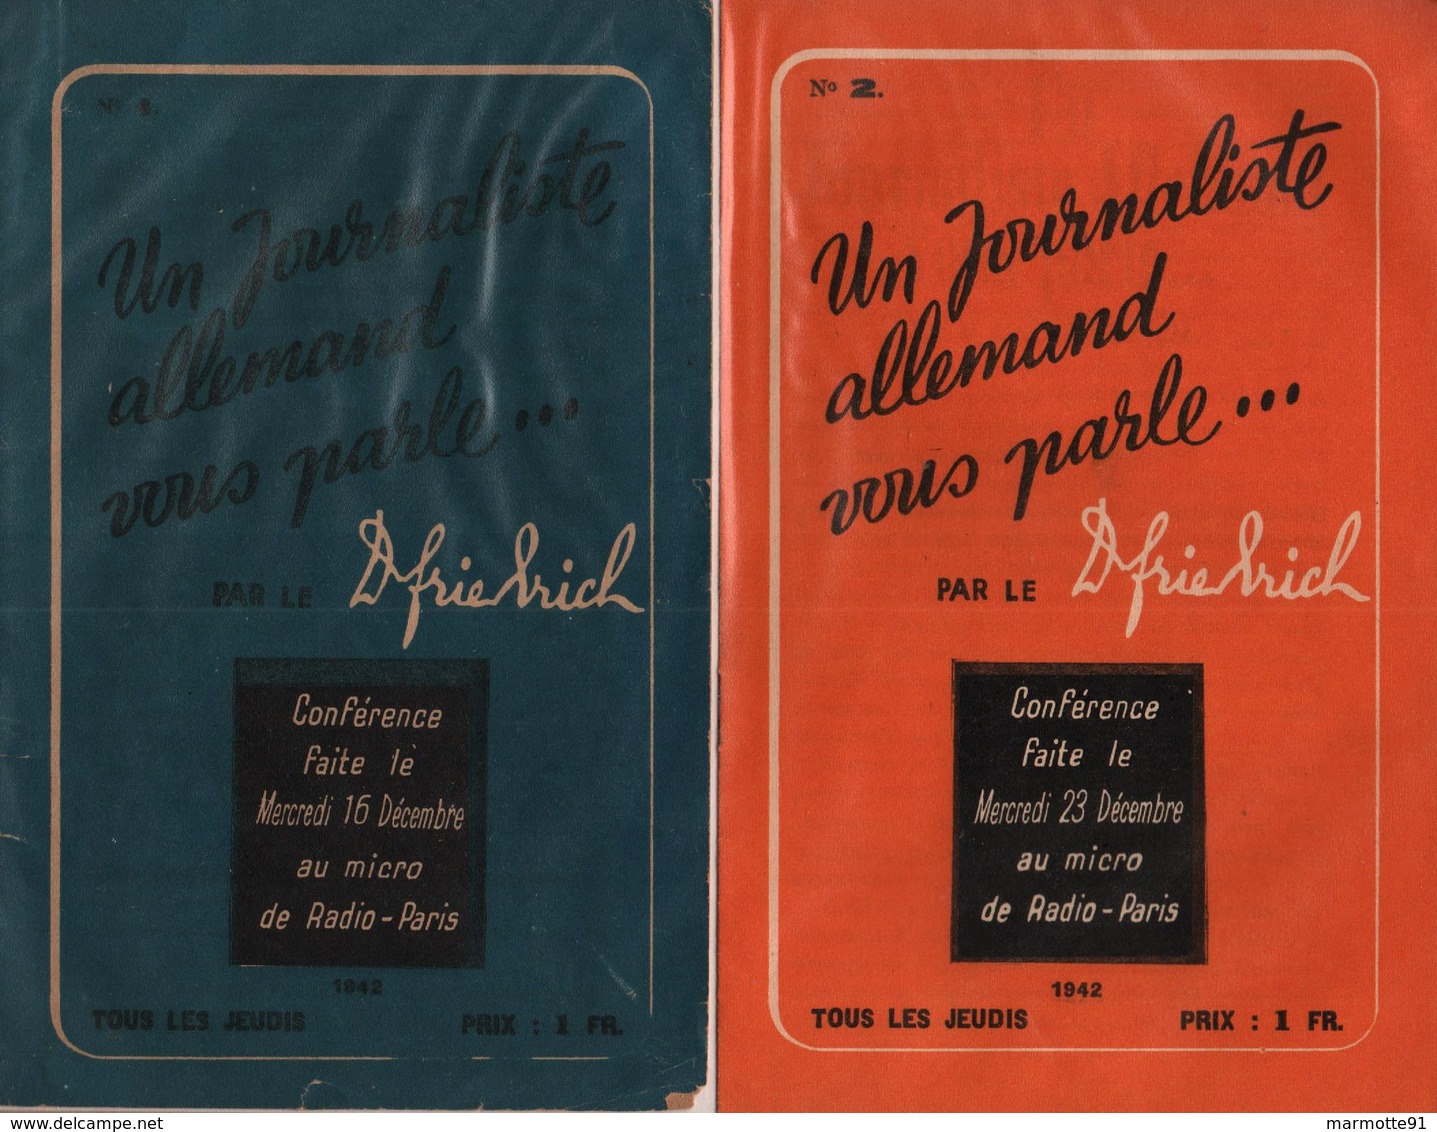 UN JOURNALISTE ALLEMAND VOUS PARLE PAR Doc. FRIEDRICH RADIO PARIS 1942 1943 PROPAGANDE COLLABORATION REICH - 1939-45